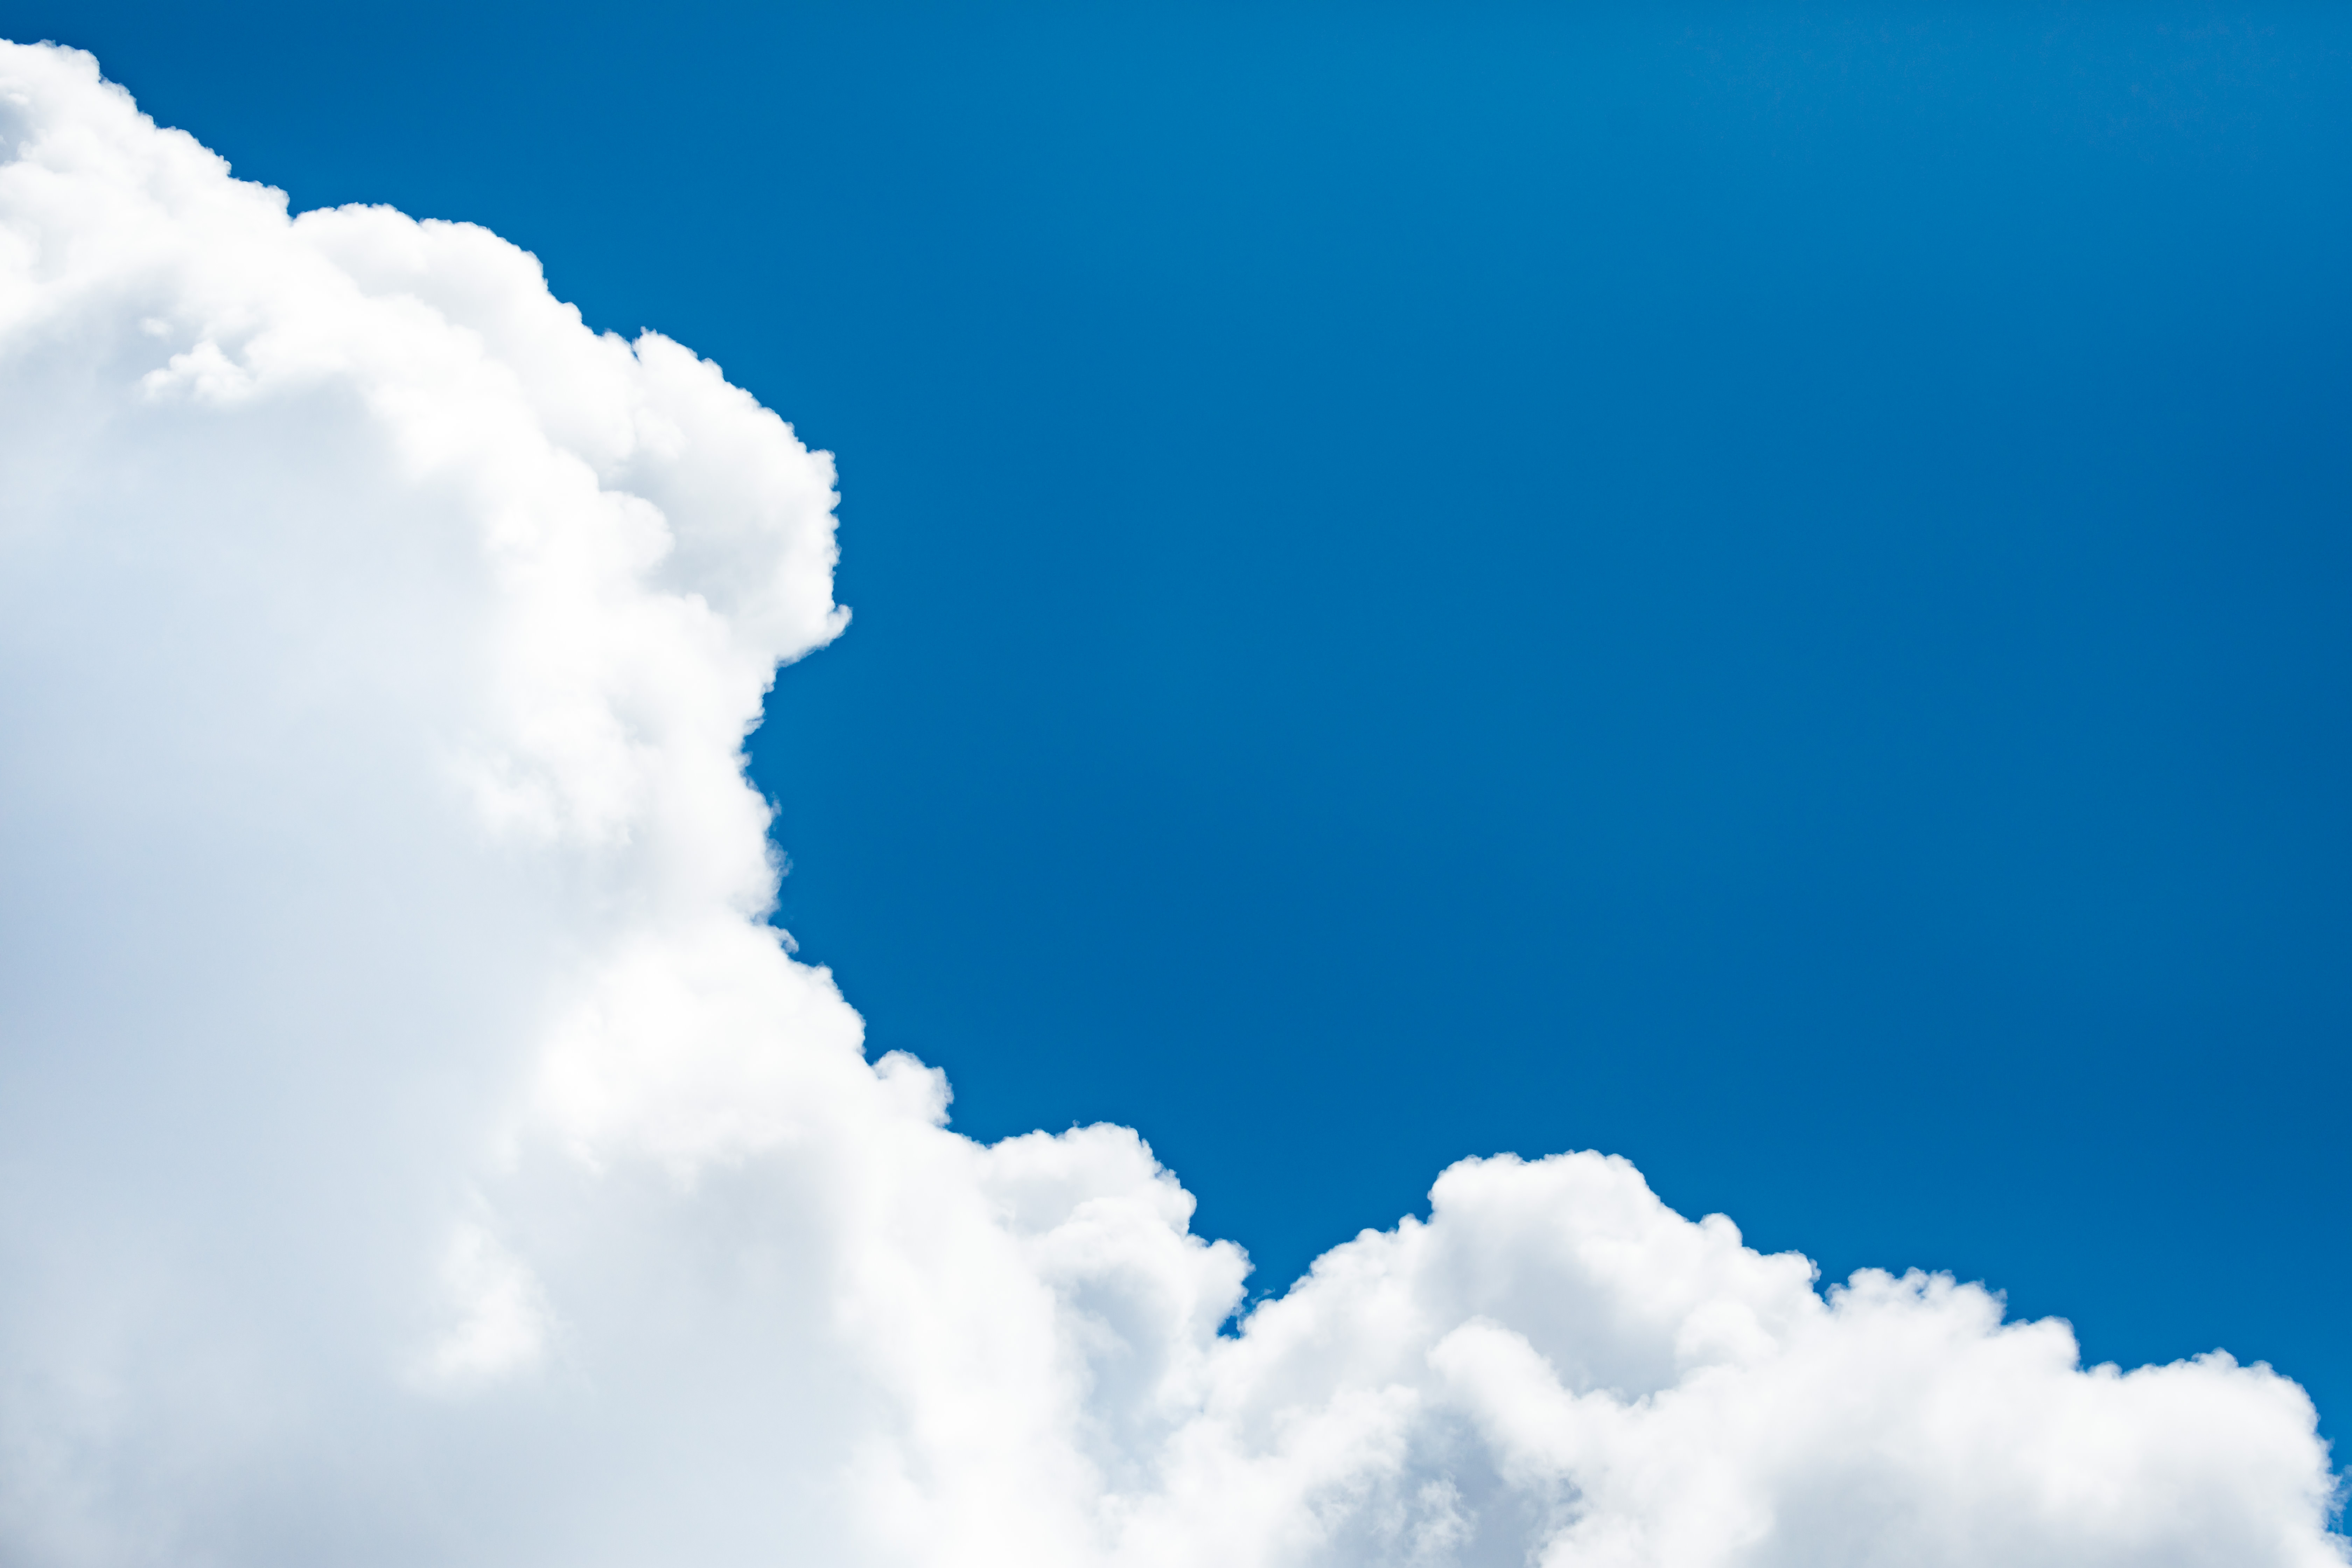 絵に書いたような青空雲の写真を無料ダウンロード フリー素材 ぱくたそ